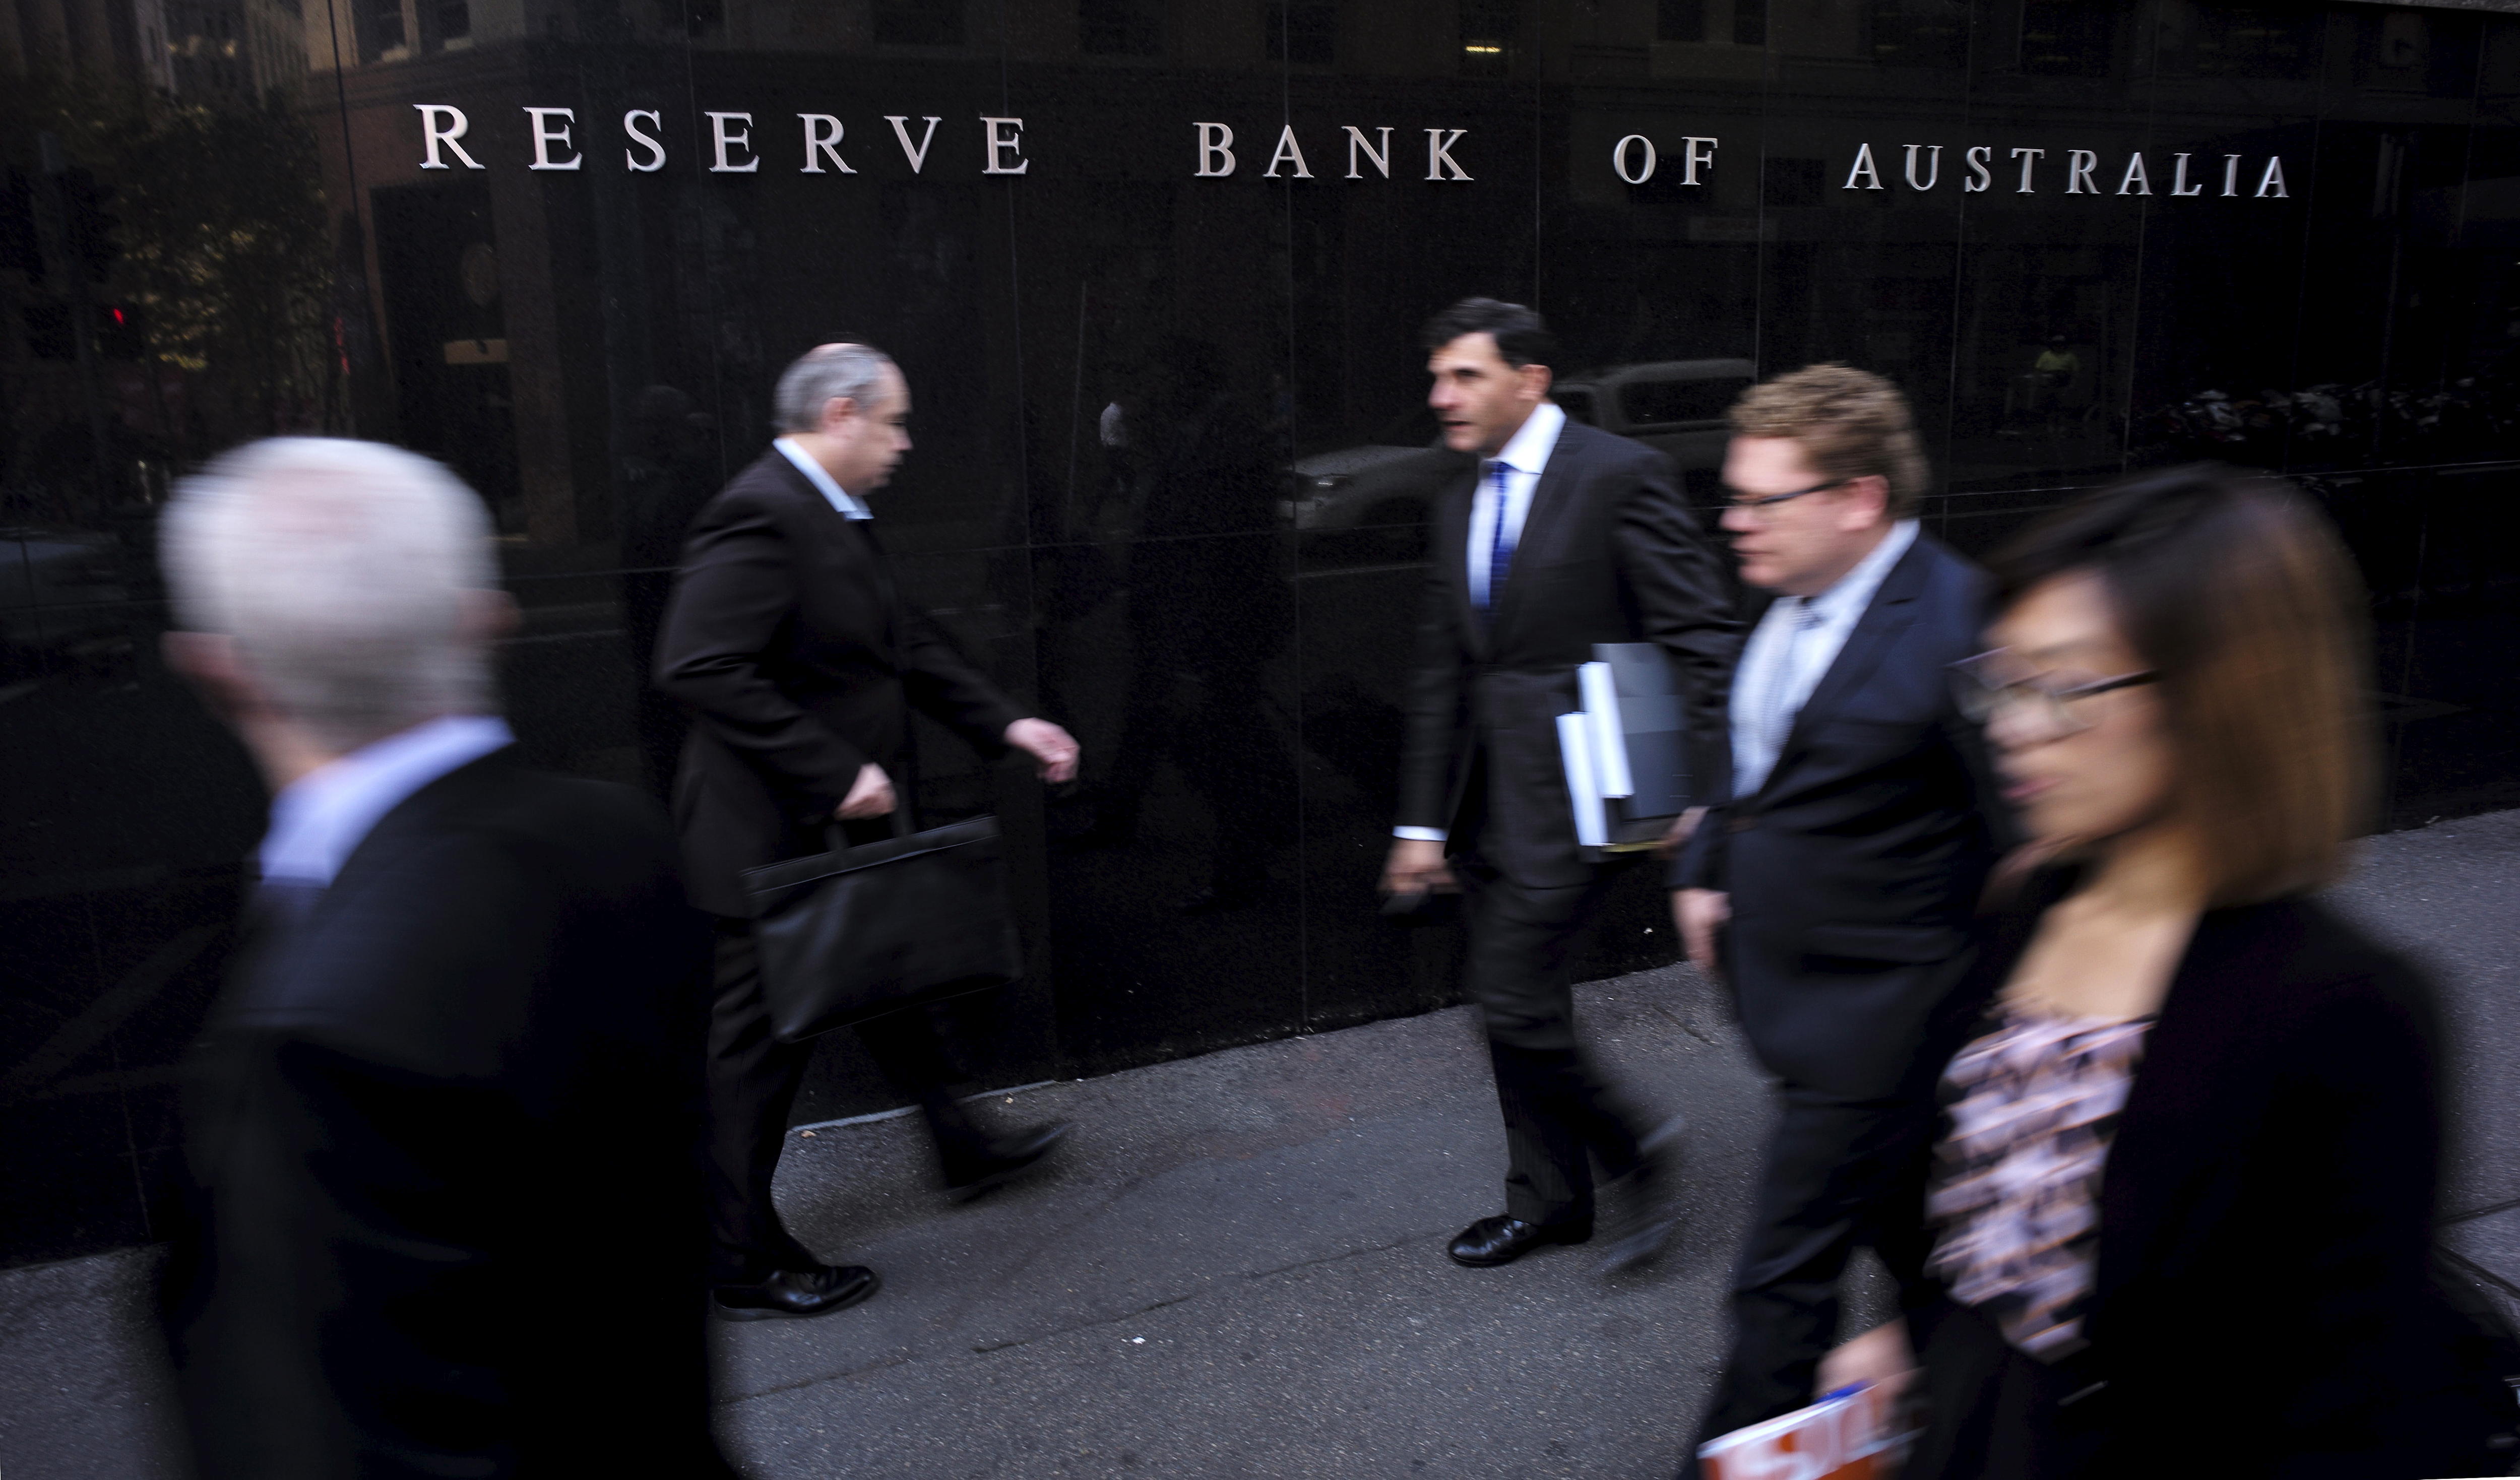 四男一女，都穿着西装，走在悉尼澳大利亚储备银行大楼前。